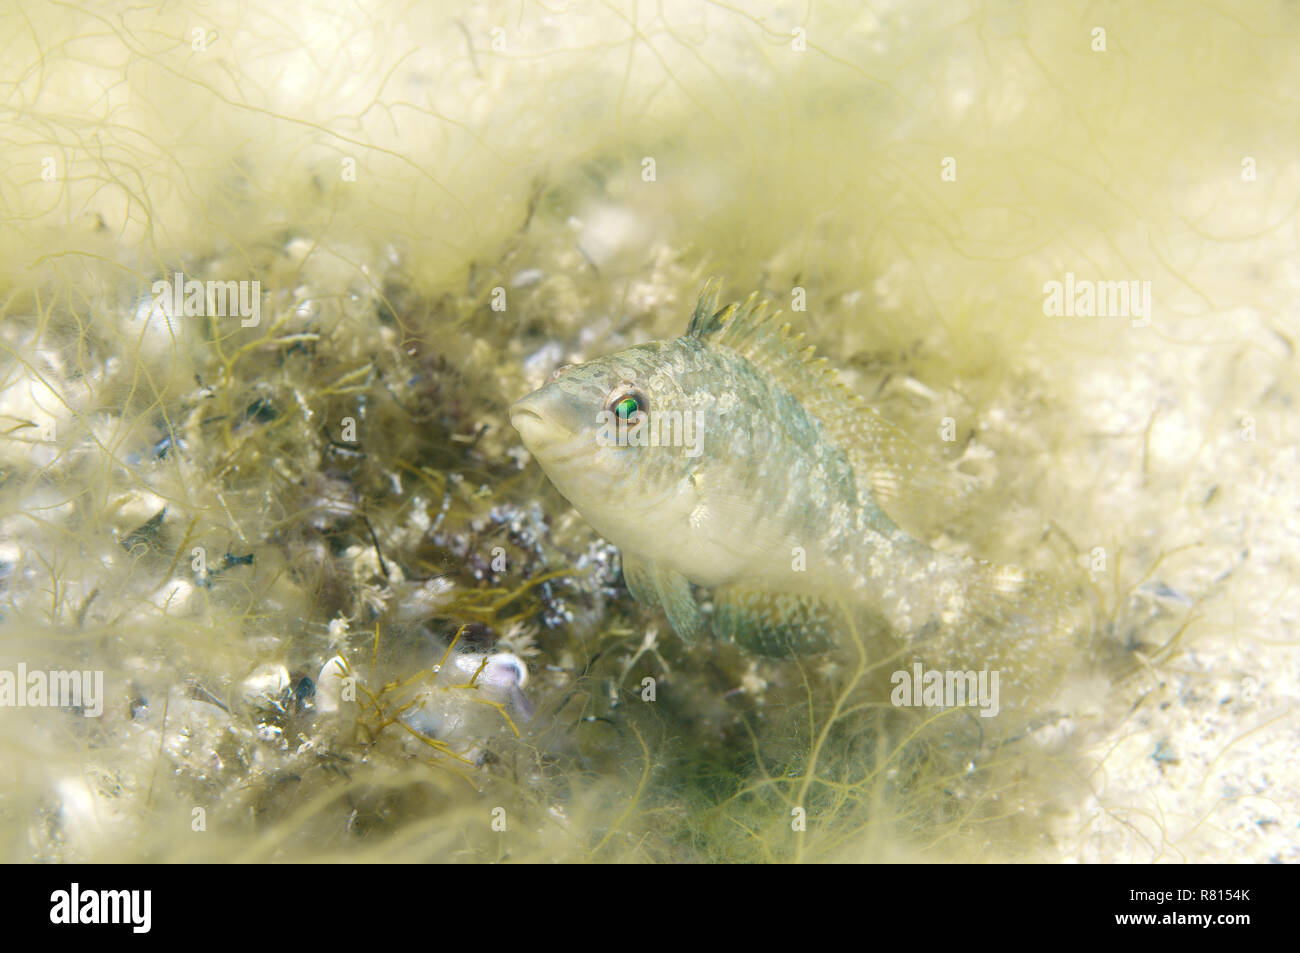 Grey Wrasse (Symphodus cinereus) guarding its nest, Black Sea, Crimea, Ukraine Stock Photo